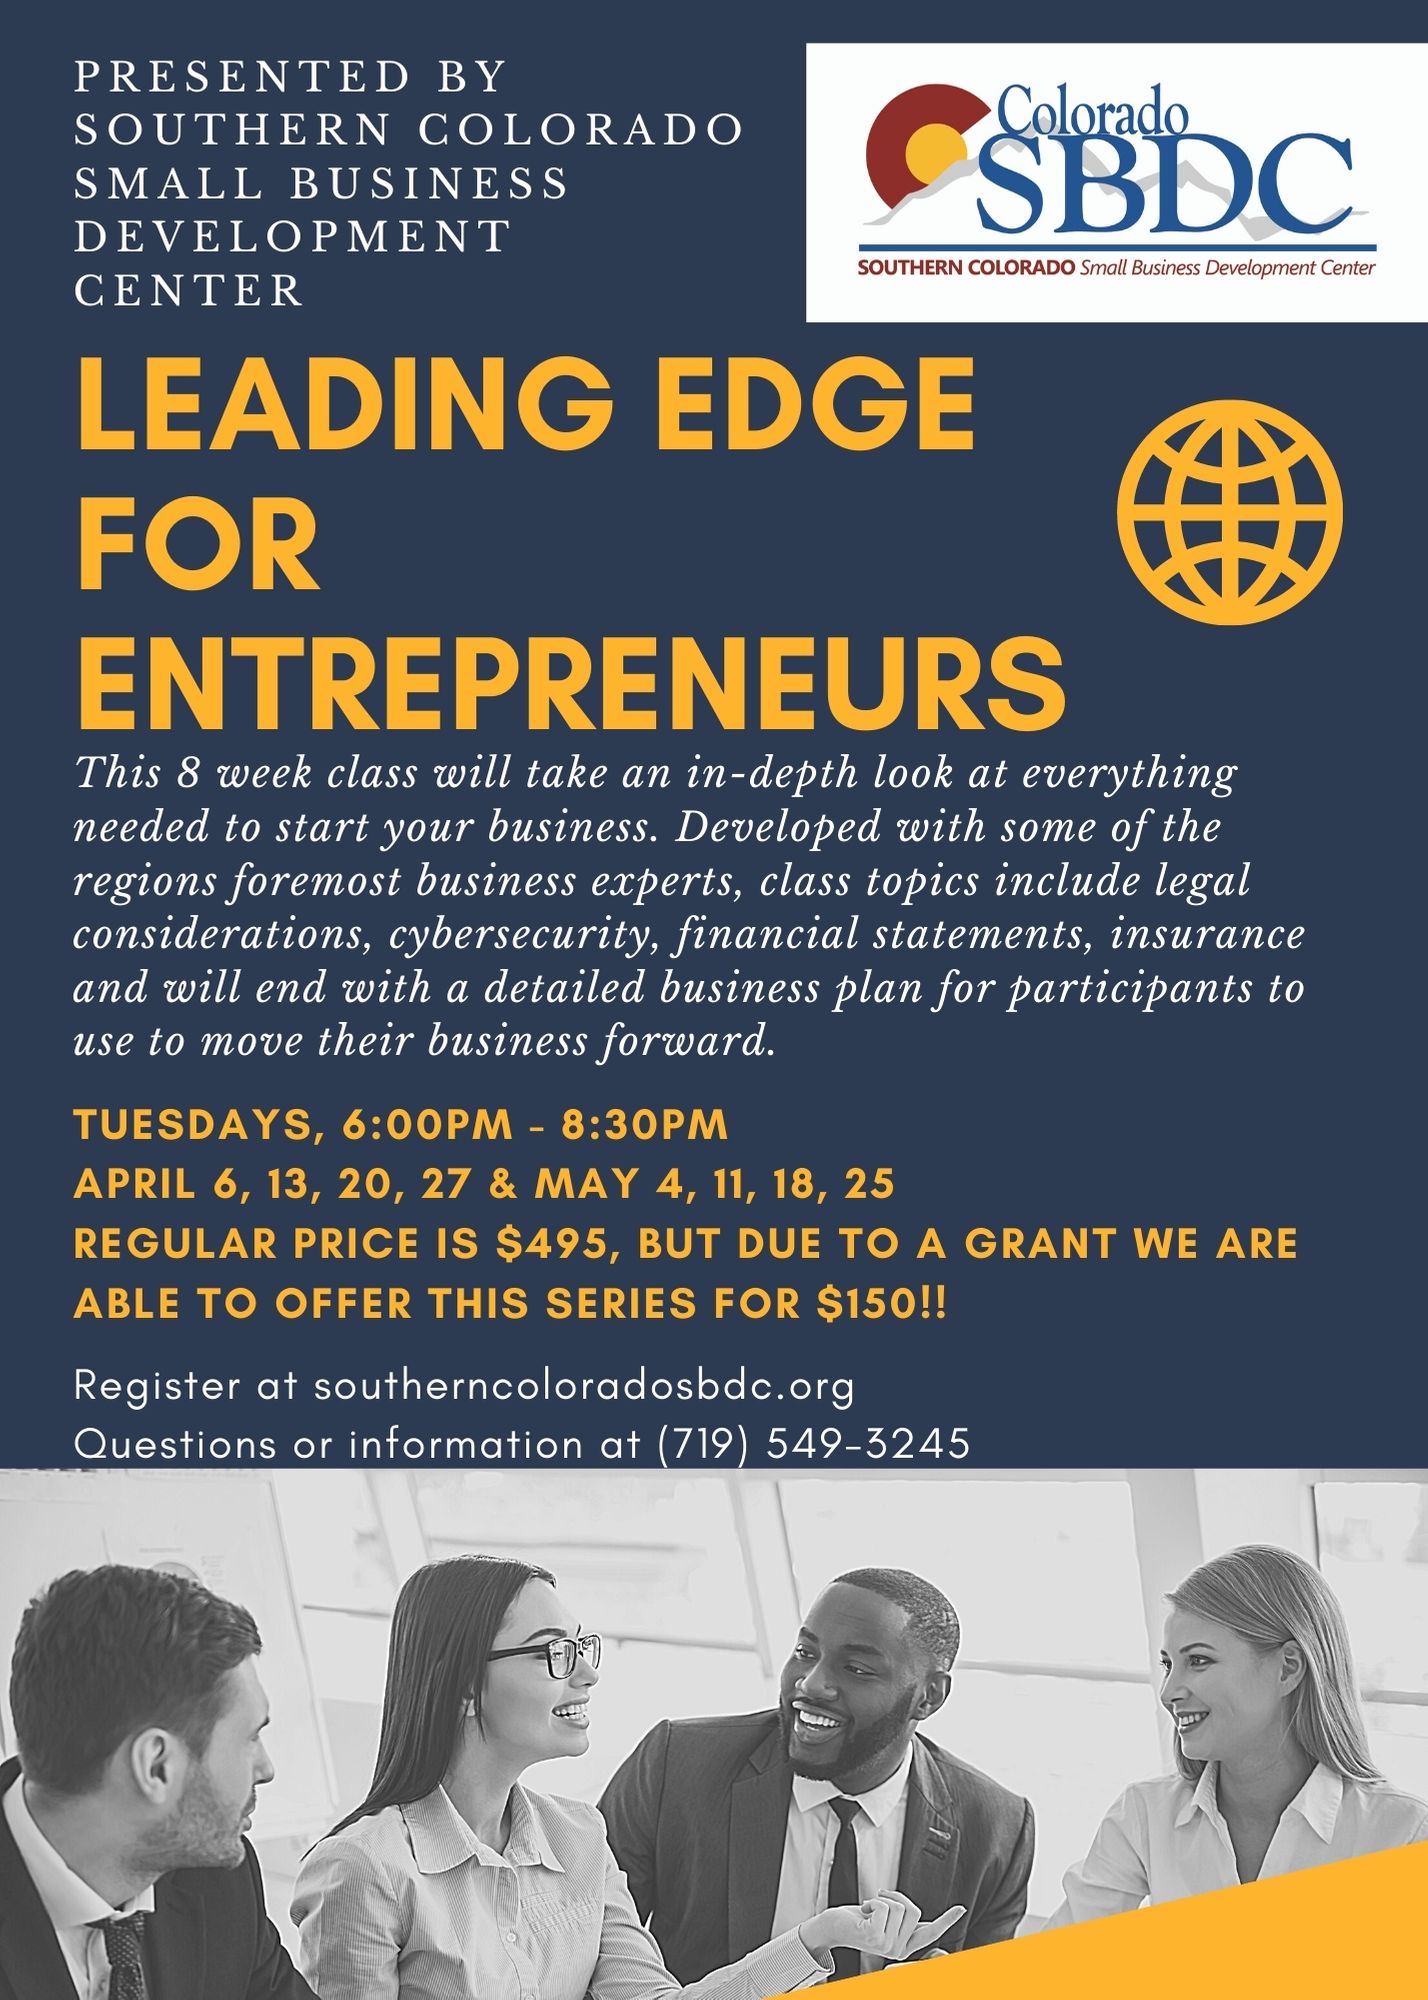 Leading Edge for Entrepreneurs Class Information